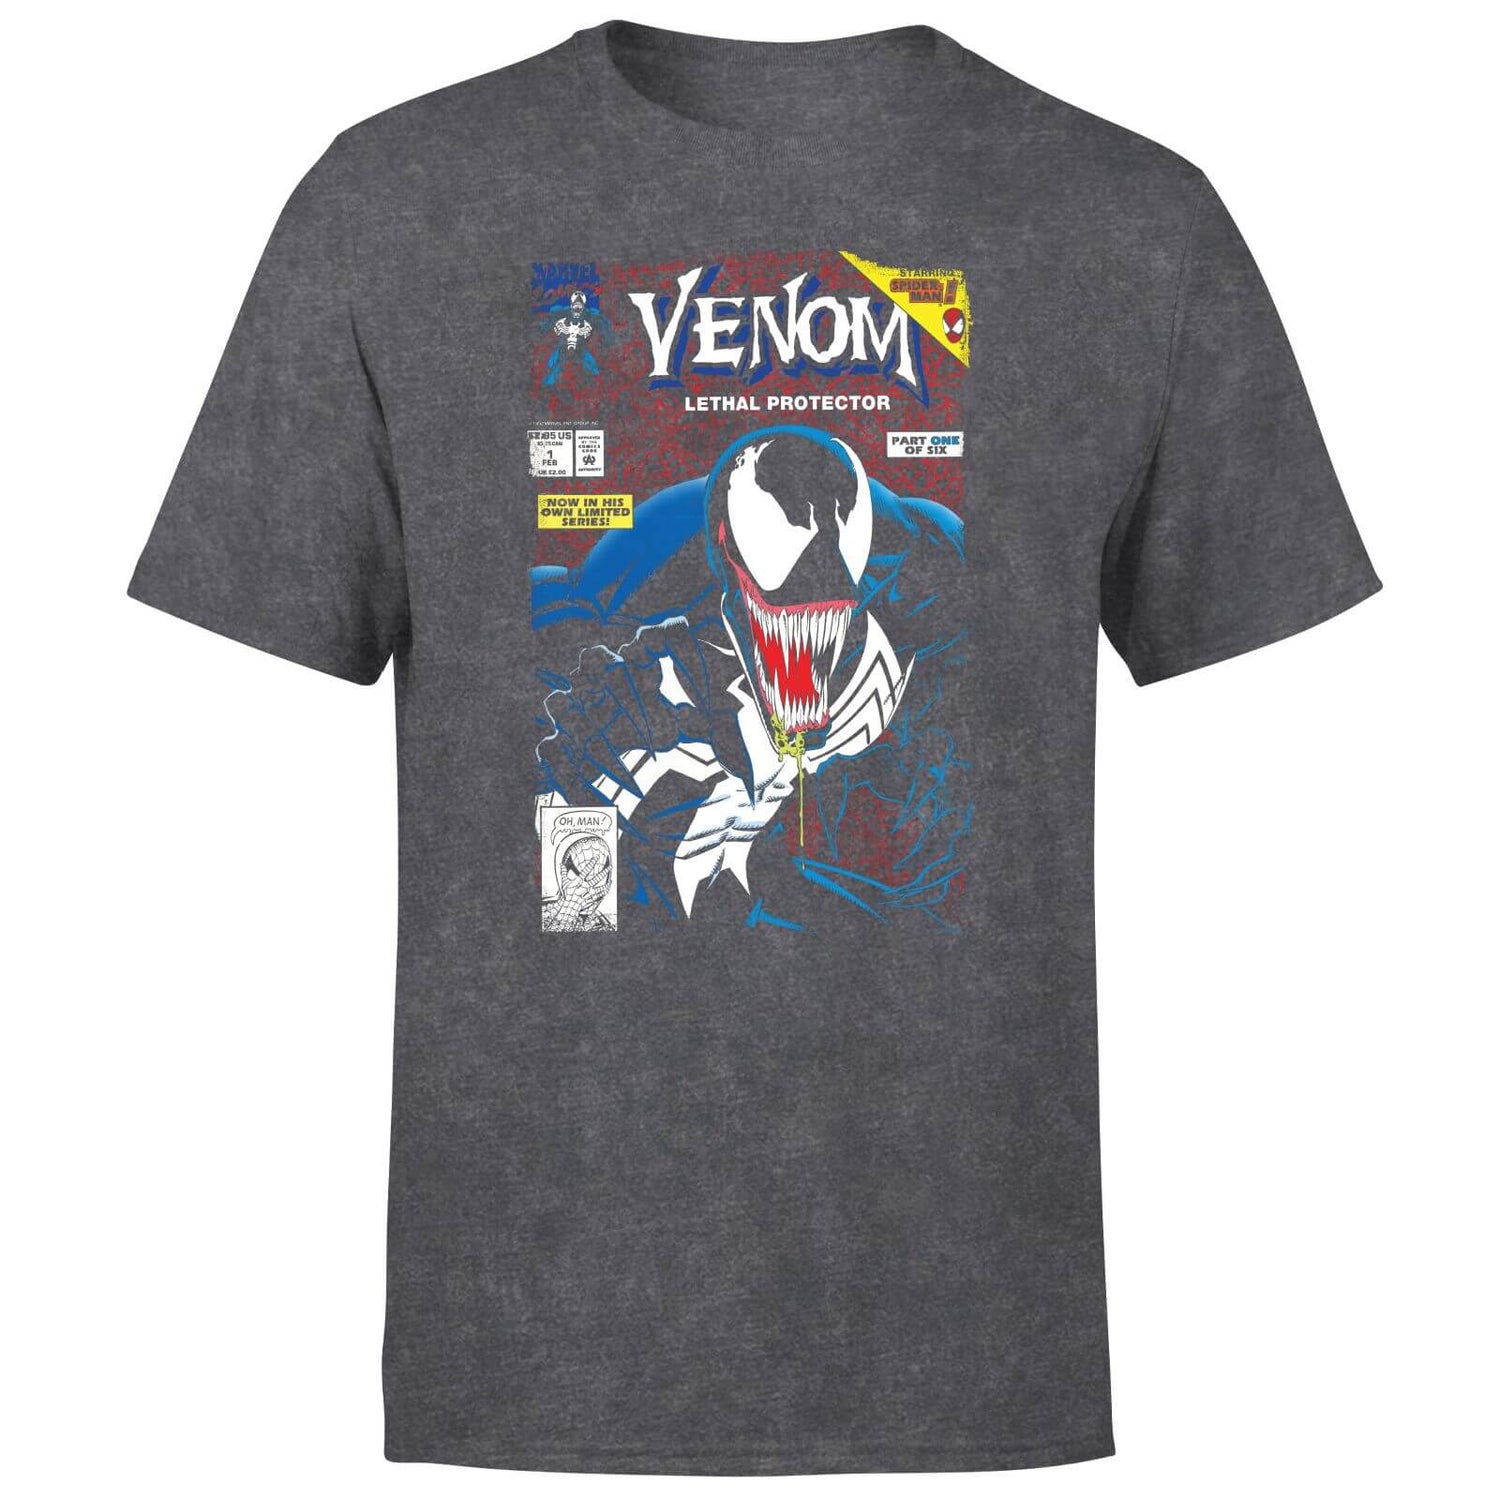 Venom Lethal Protector Men's T-Shirt - Black Acid Wash